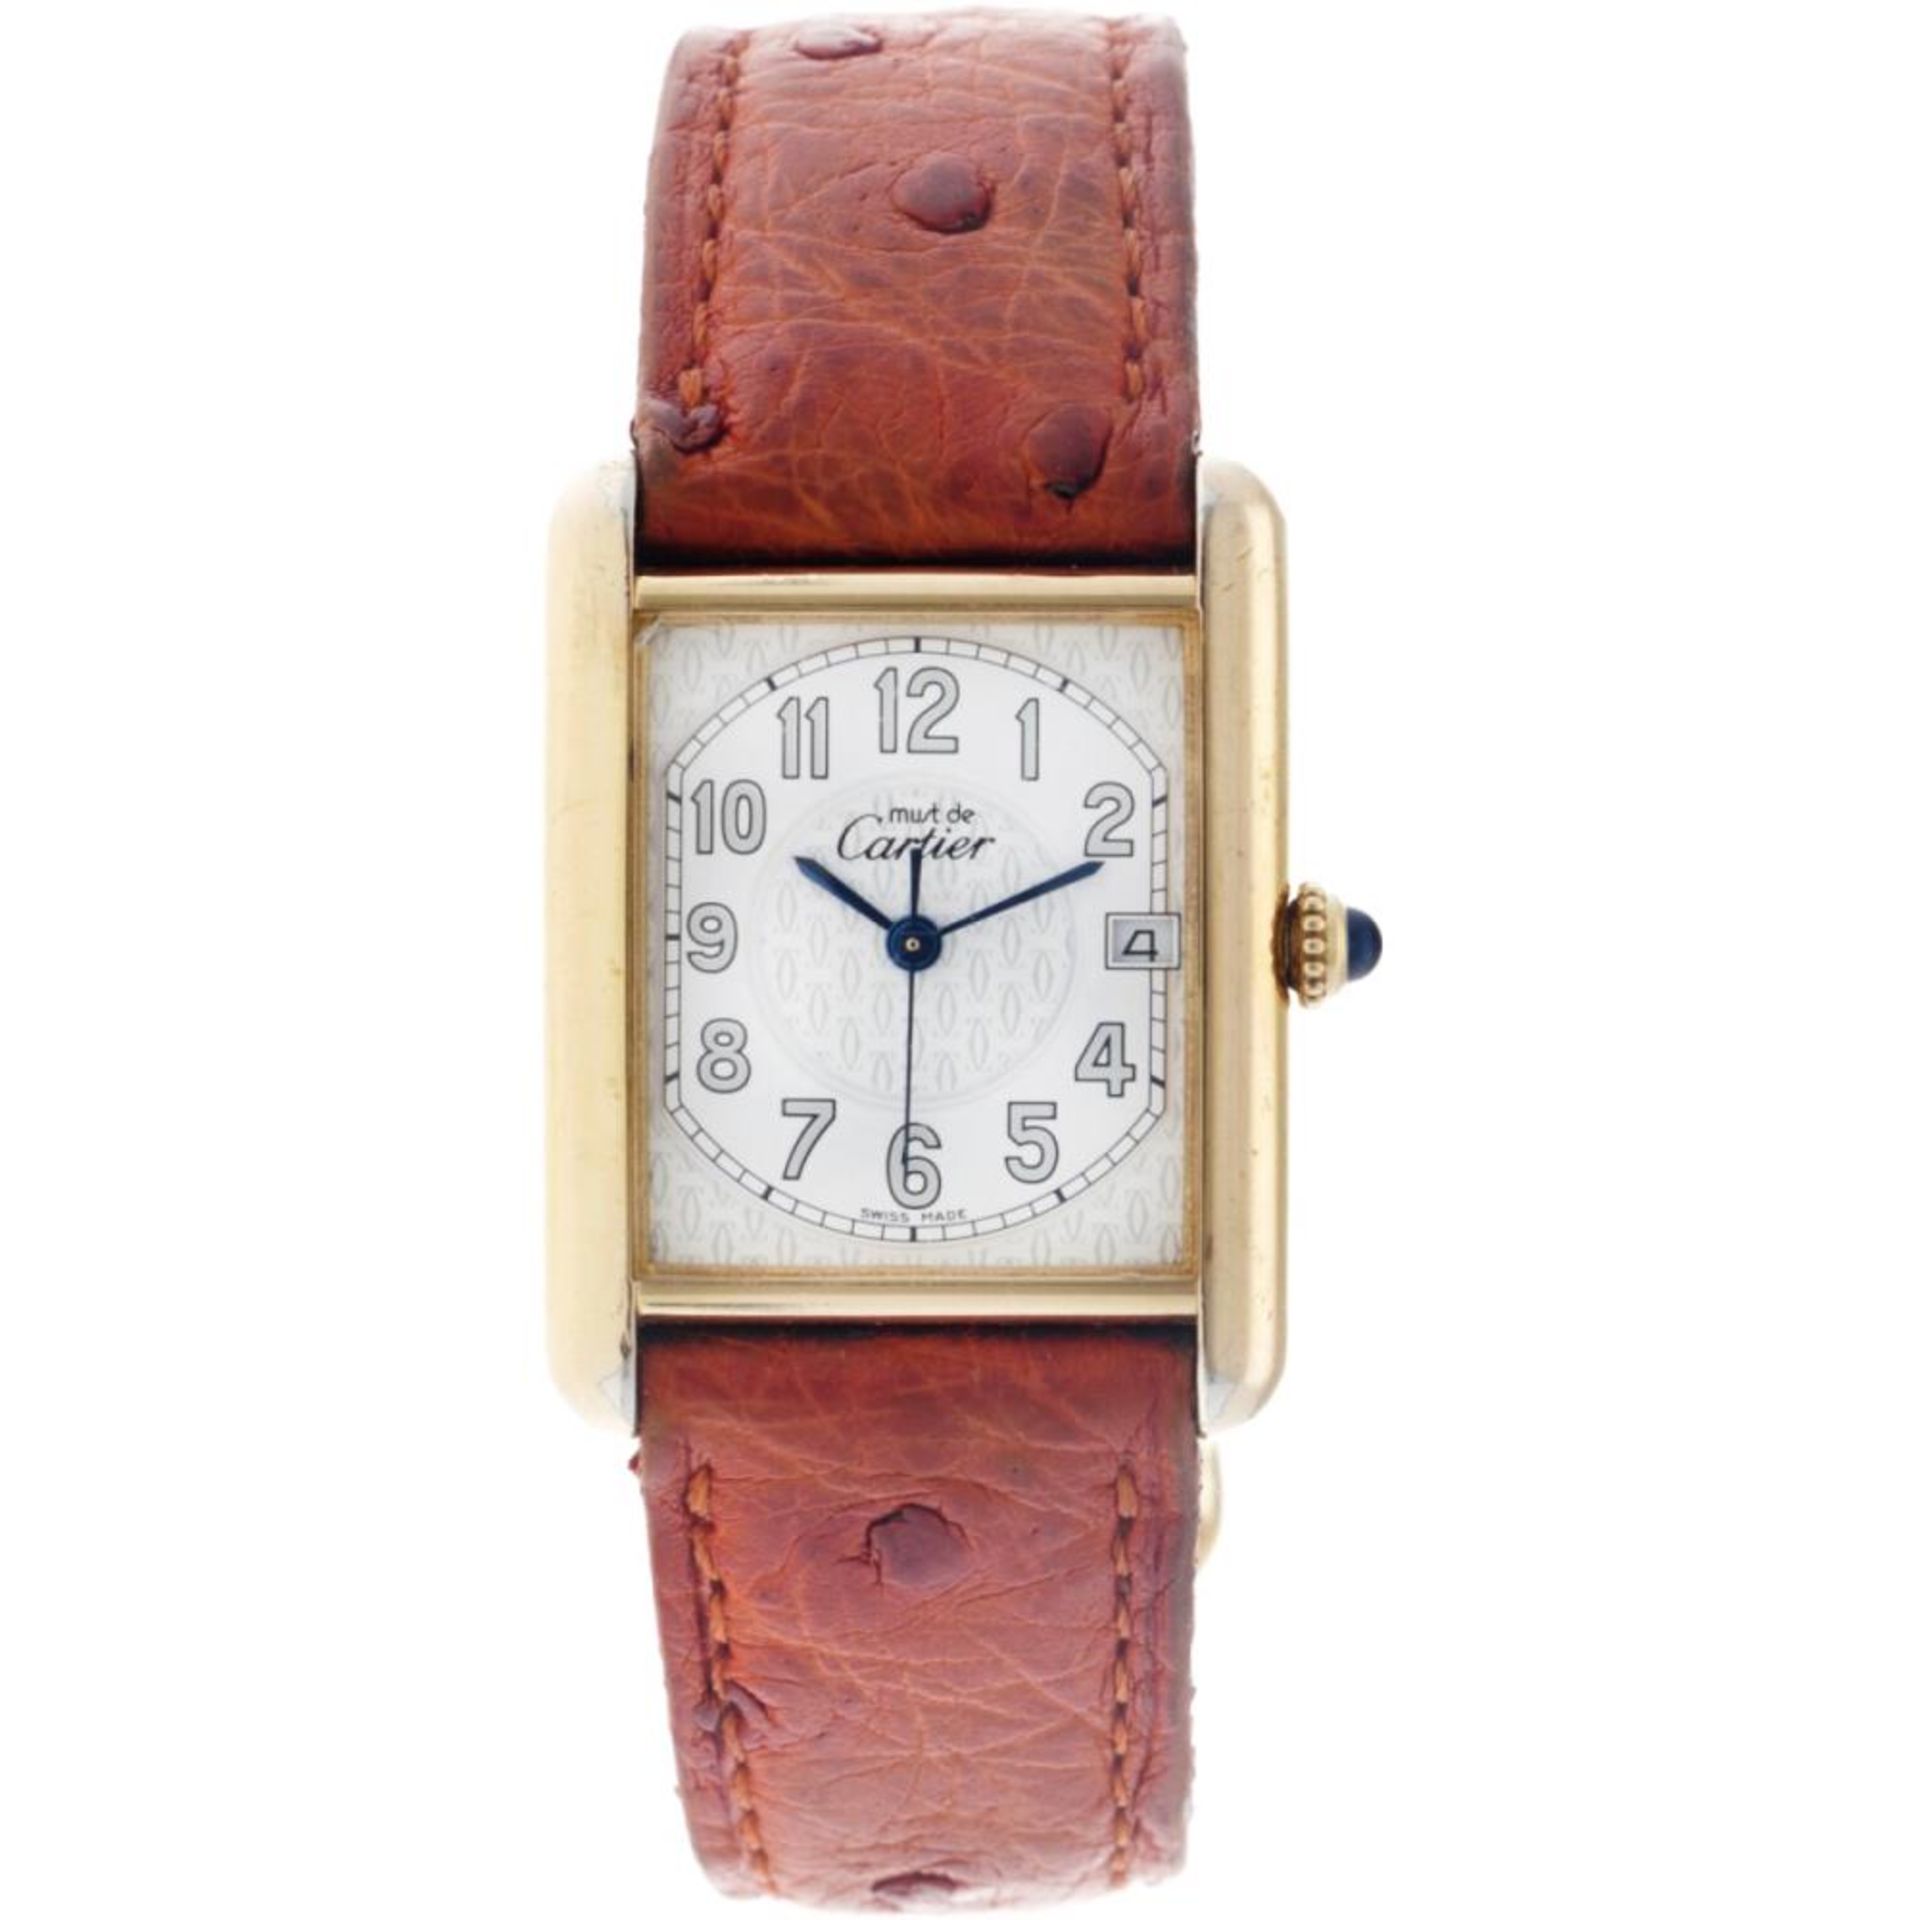 Cartier Tank 2413 - Men's watch - approx. 2000.